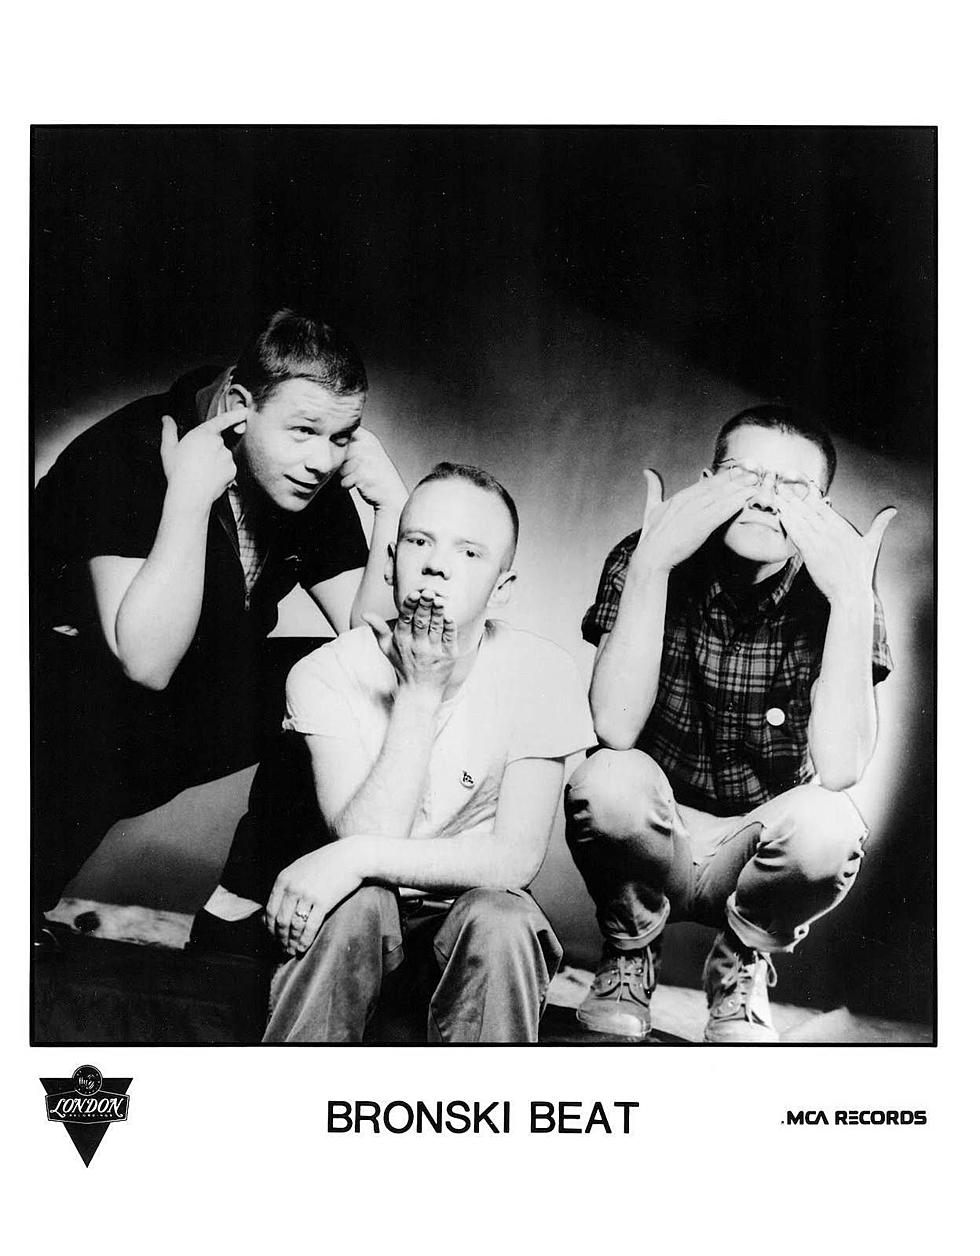 Bronski Beat co-founder Steve Bronski, RIP